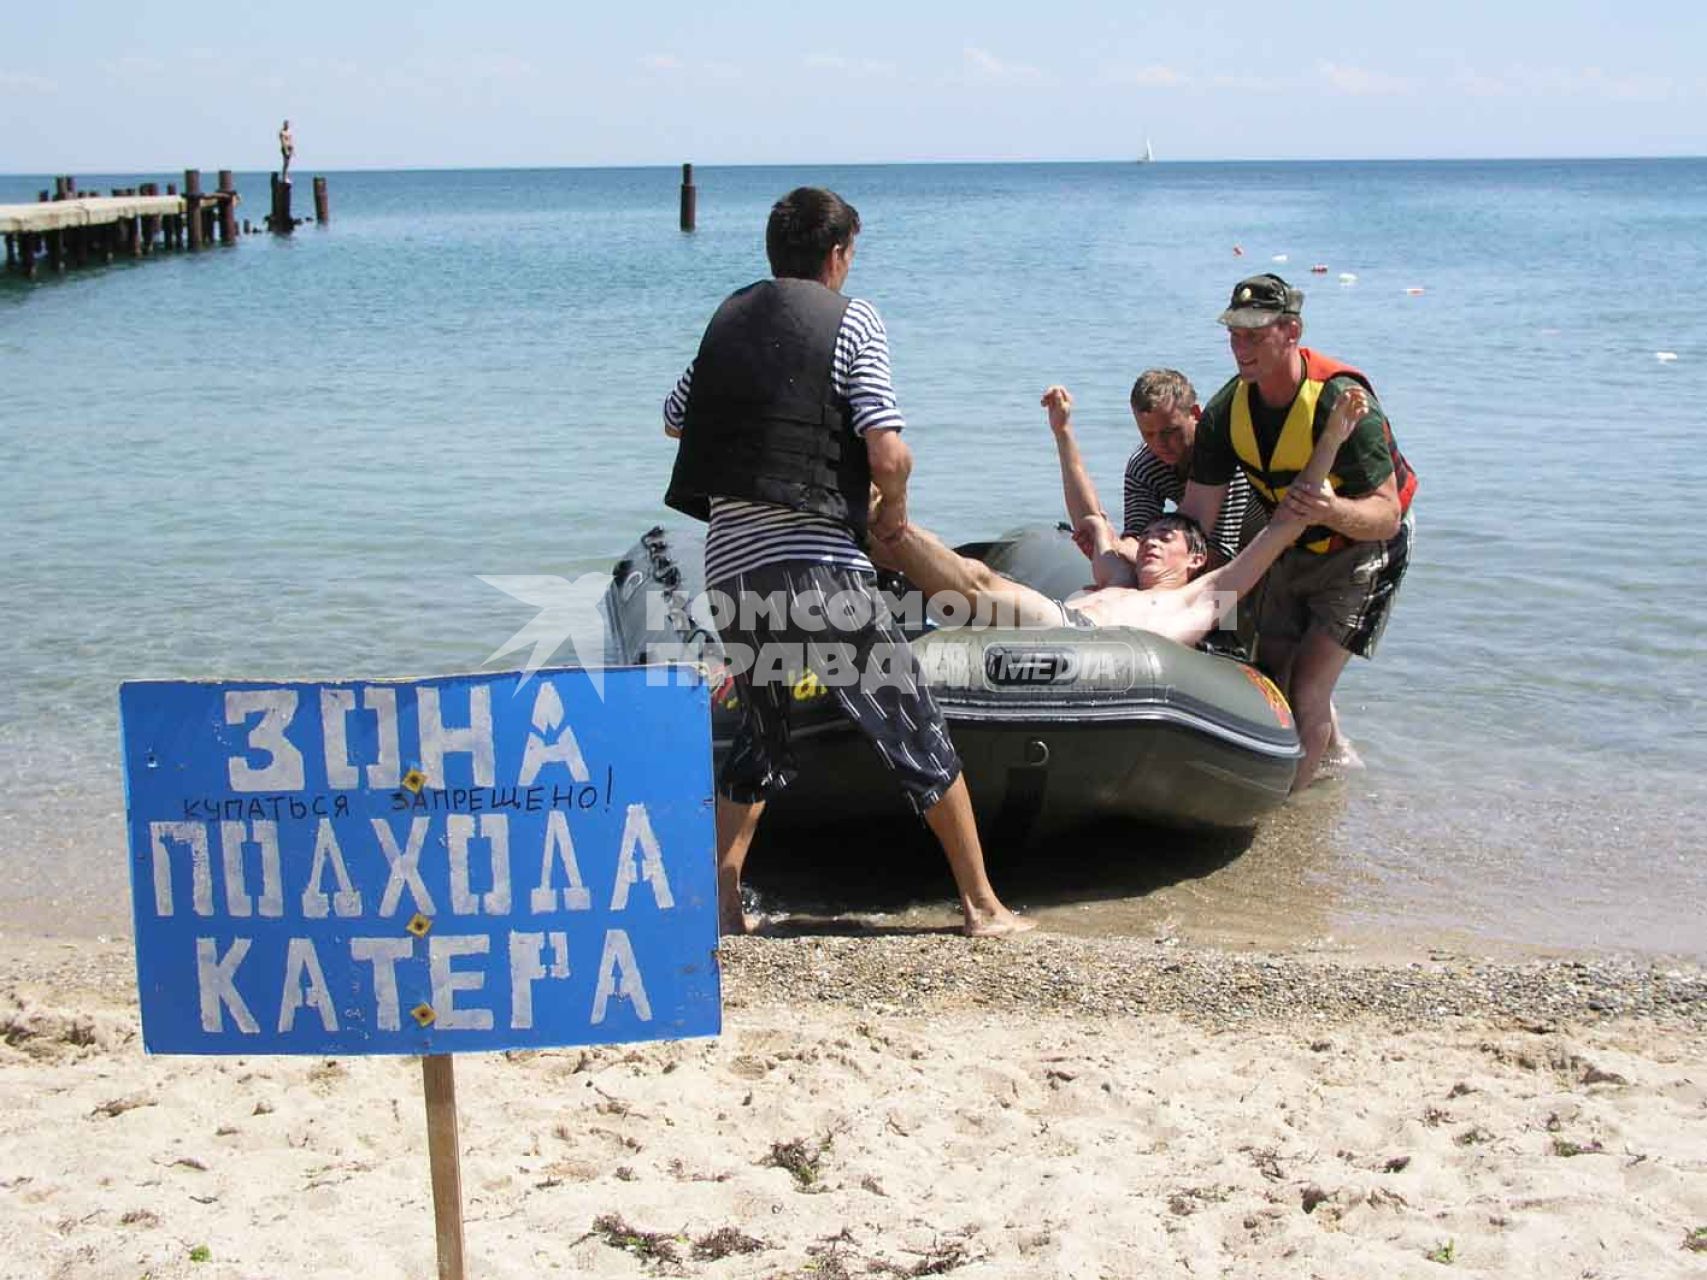 Отдых в Крыму. Спасательная станция. На снимке: спасатели вытаскивают мужчину из катера.